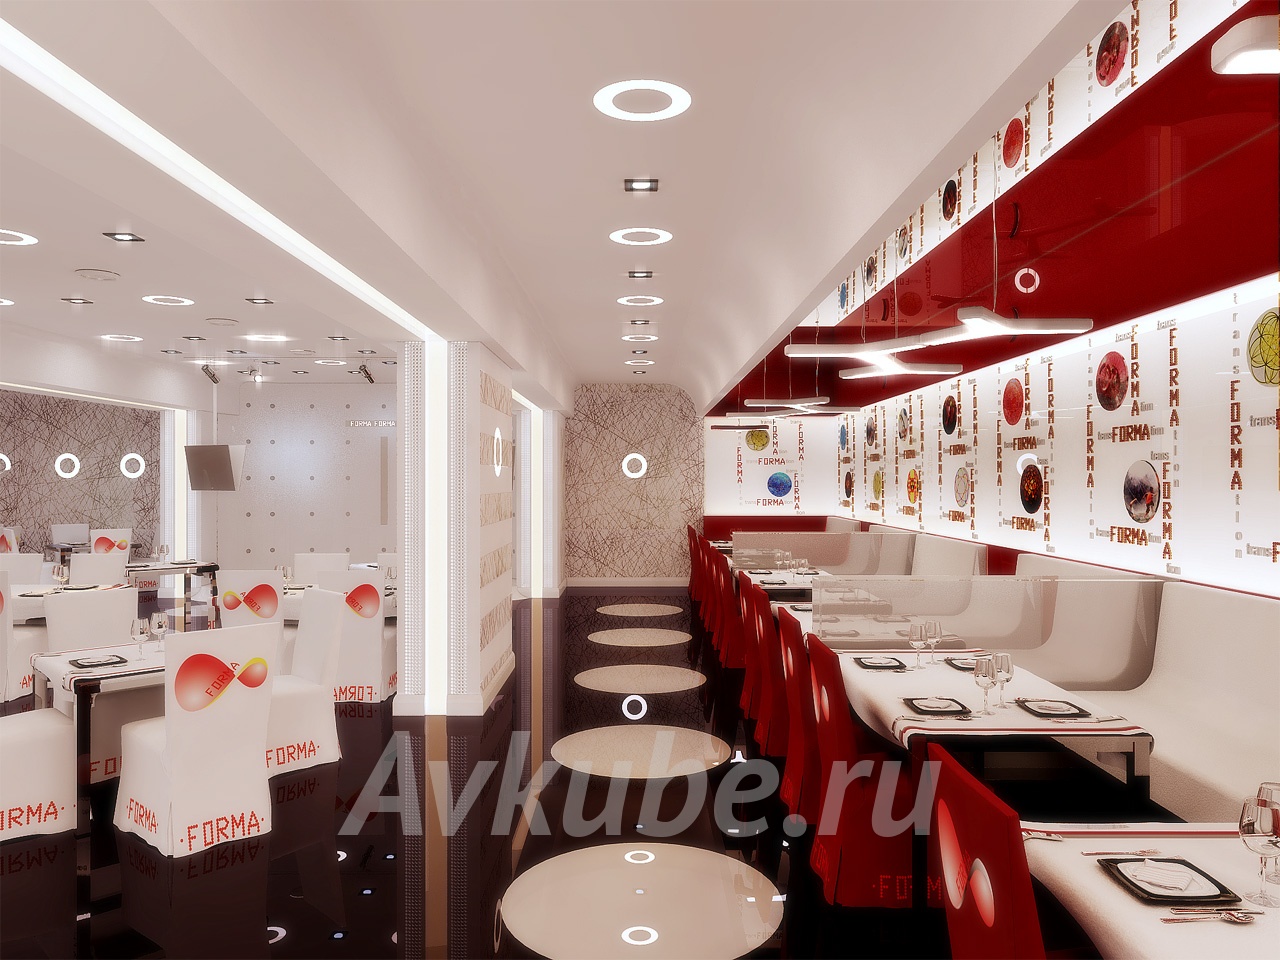 Дизайн ресторана FORMA 290 кв.м - дизайн проект интерьера ресторана всовременном стиле с ремонтом от студии Avkube. Тел: 8-499-283-10-52